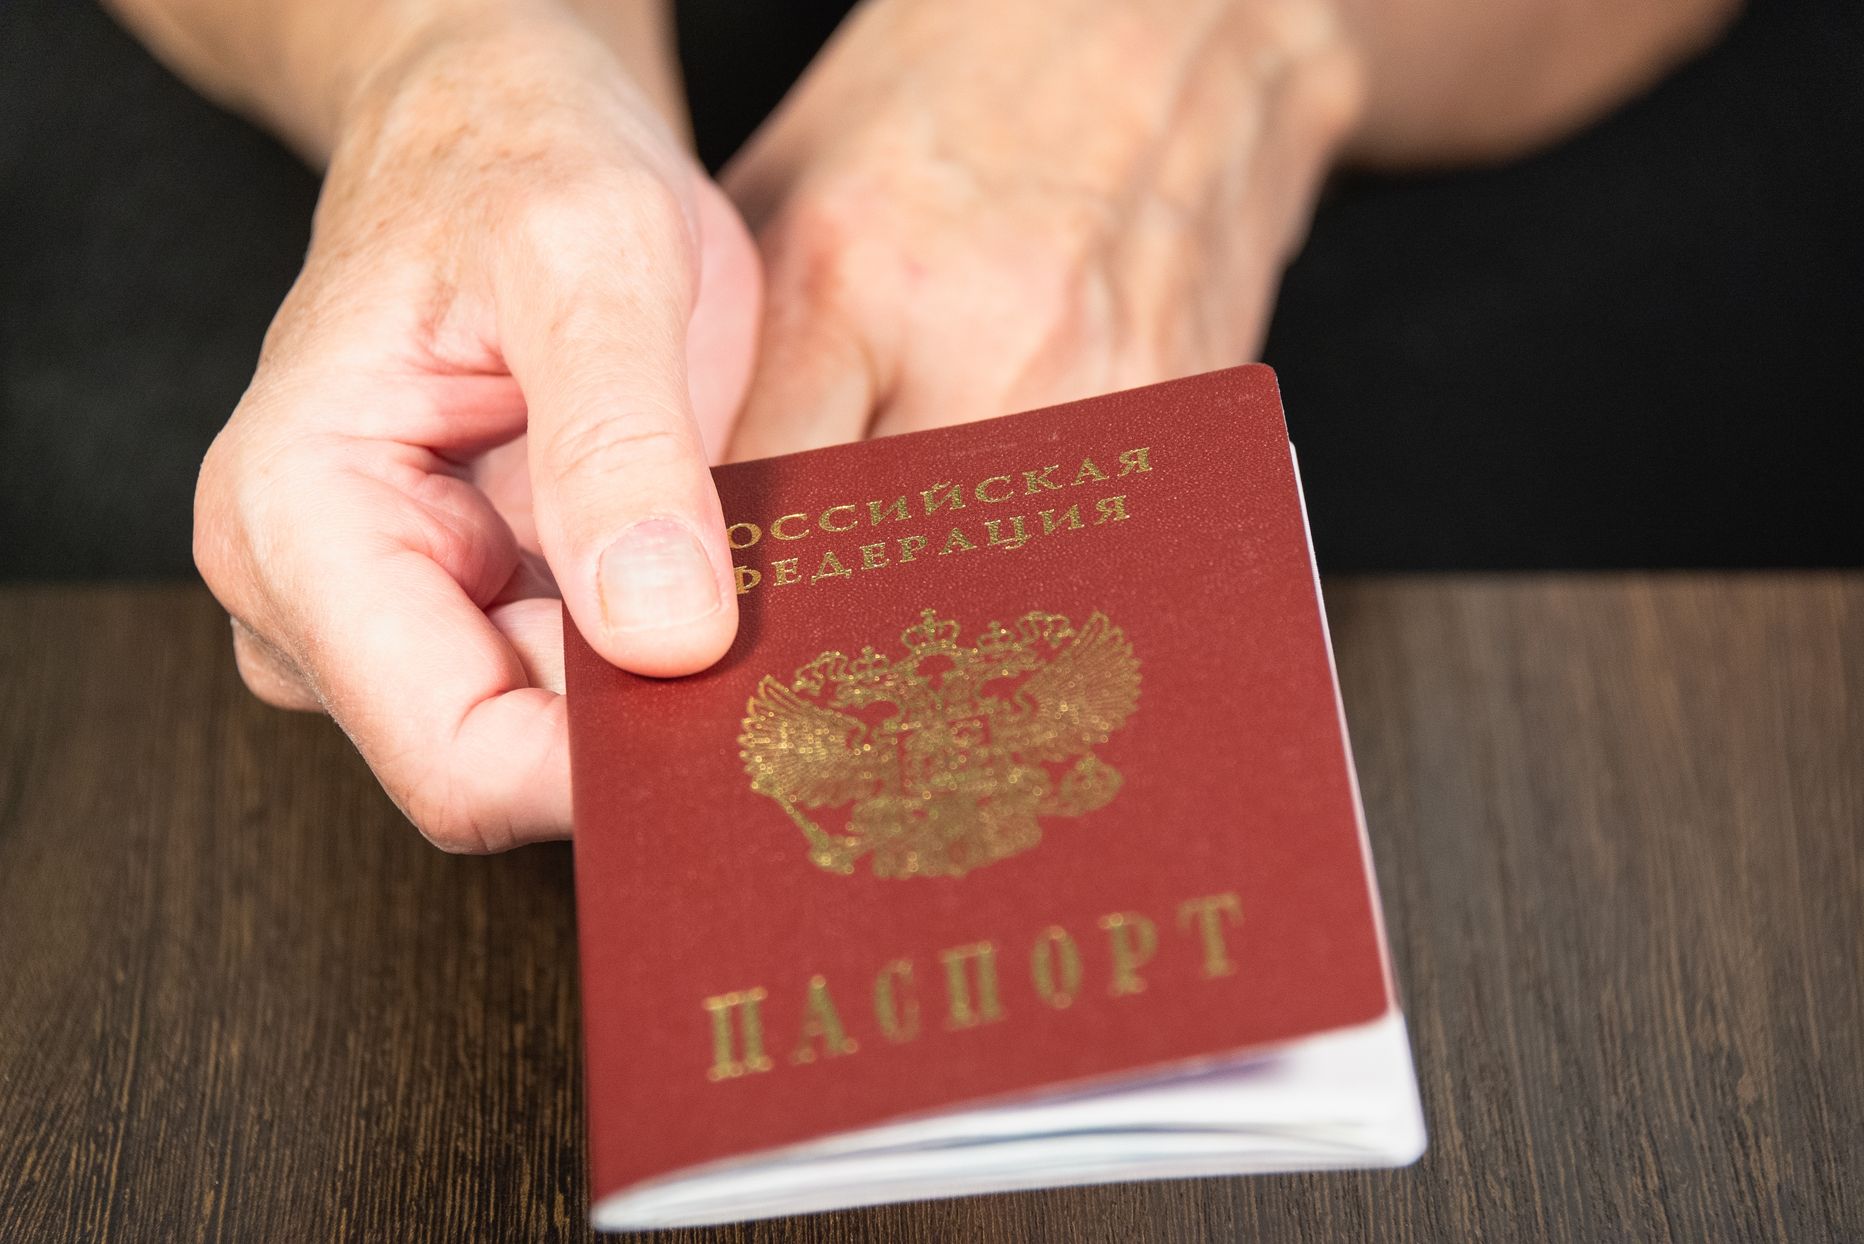 Krievijas Federācijas pase. Attēls ilustratīvs.